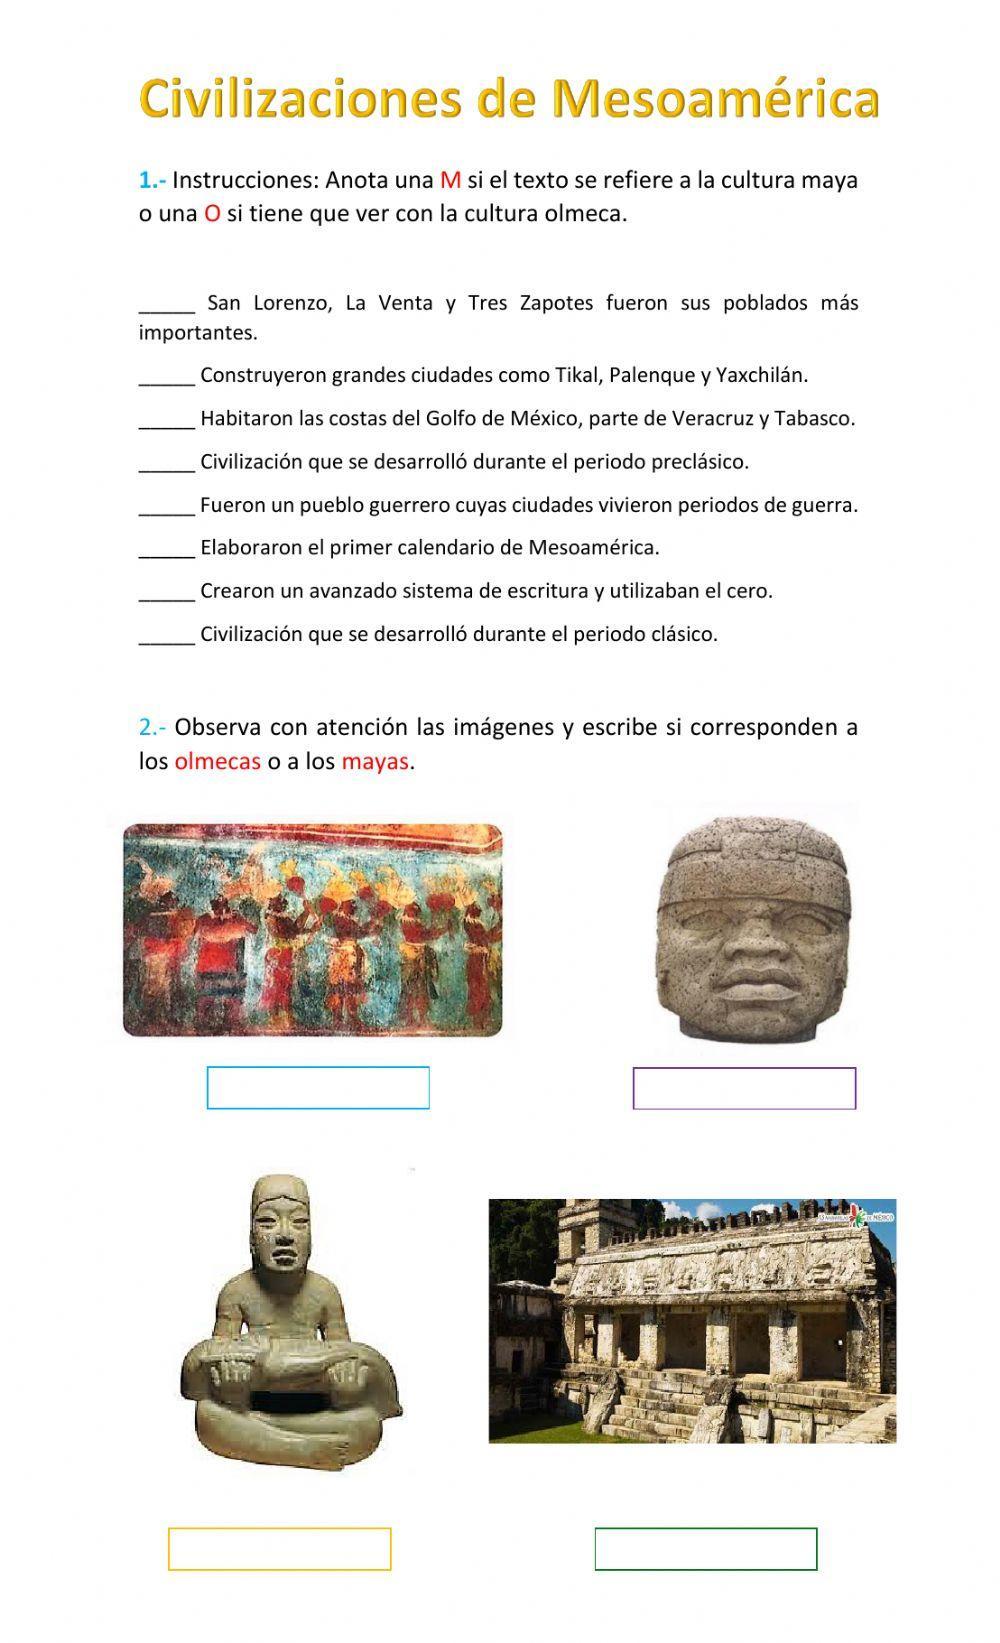 Civilizaciones de Mesoamérica